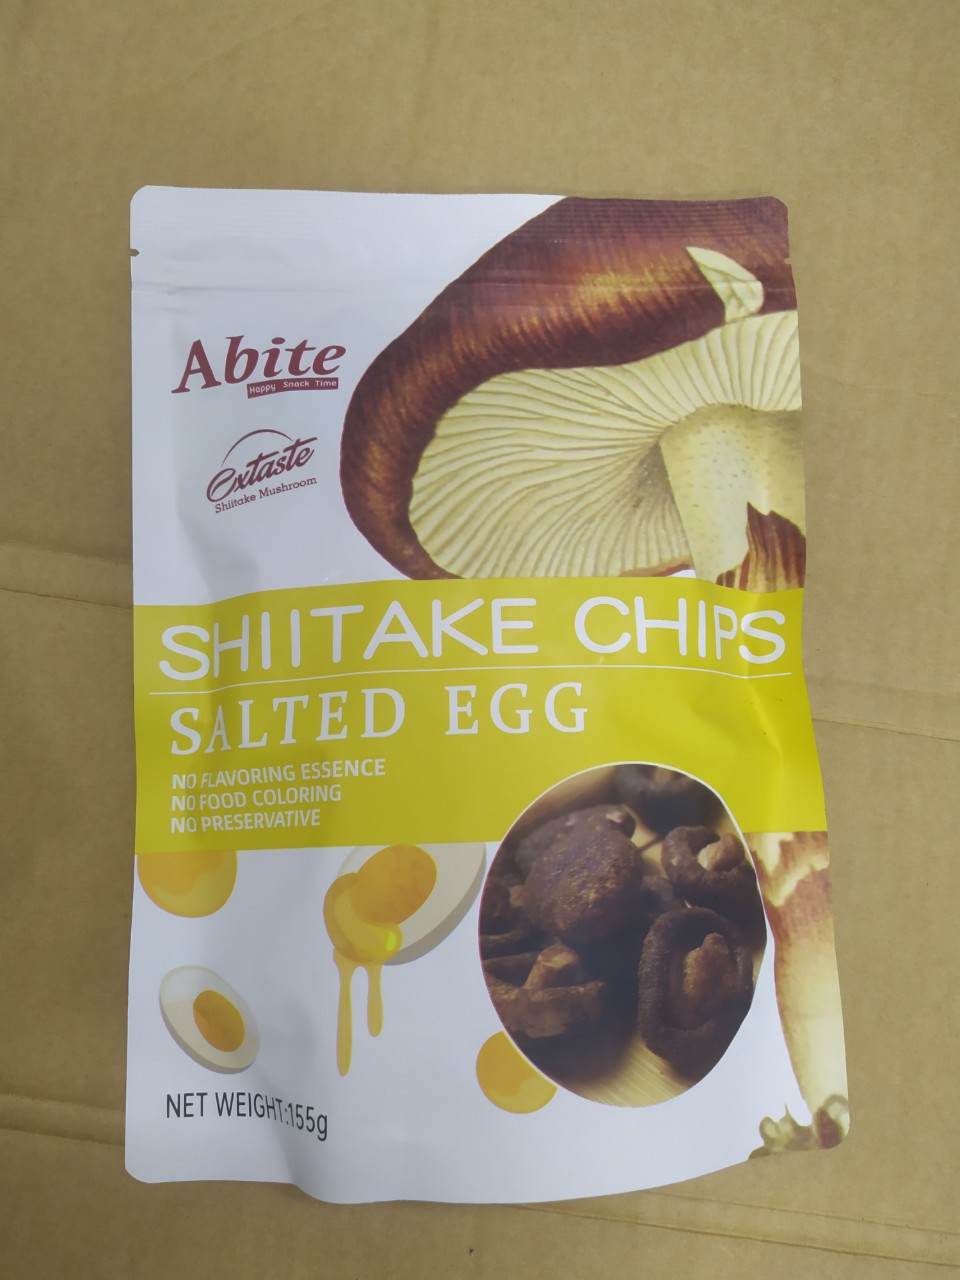 Nấm Hương sấy giòn Úc Extaste Shiitake Mushroom - Món ăn ngon Tốt cho sức khỏe Giàu chất dinh dưỡng và Chống oxy hóa [QUÀ TẾT 2023]